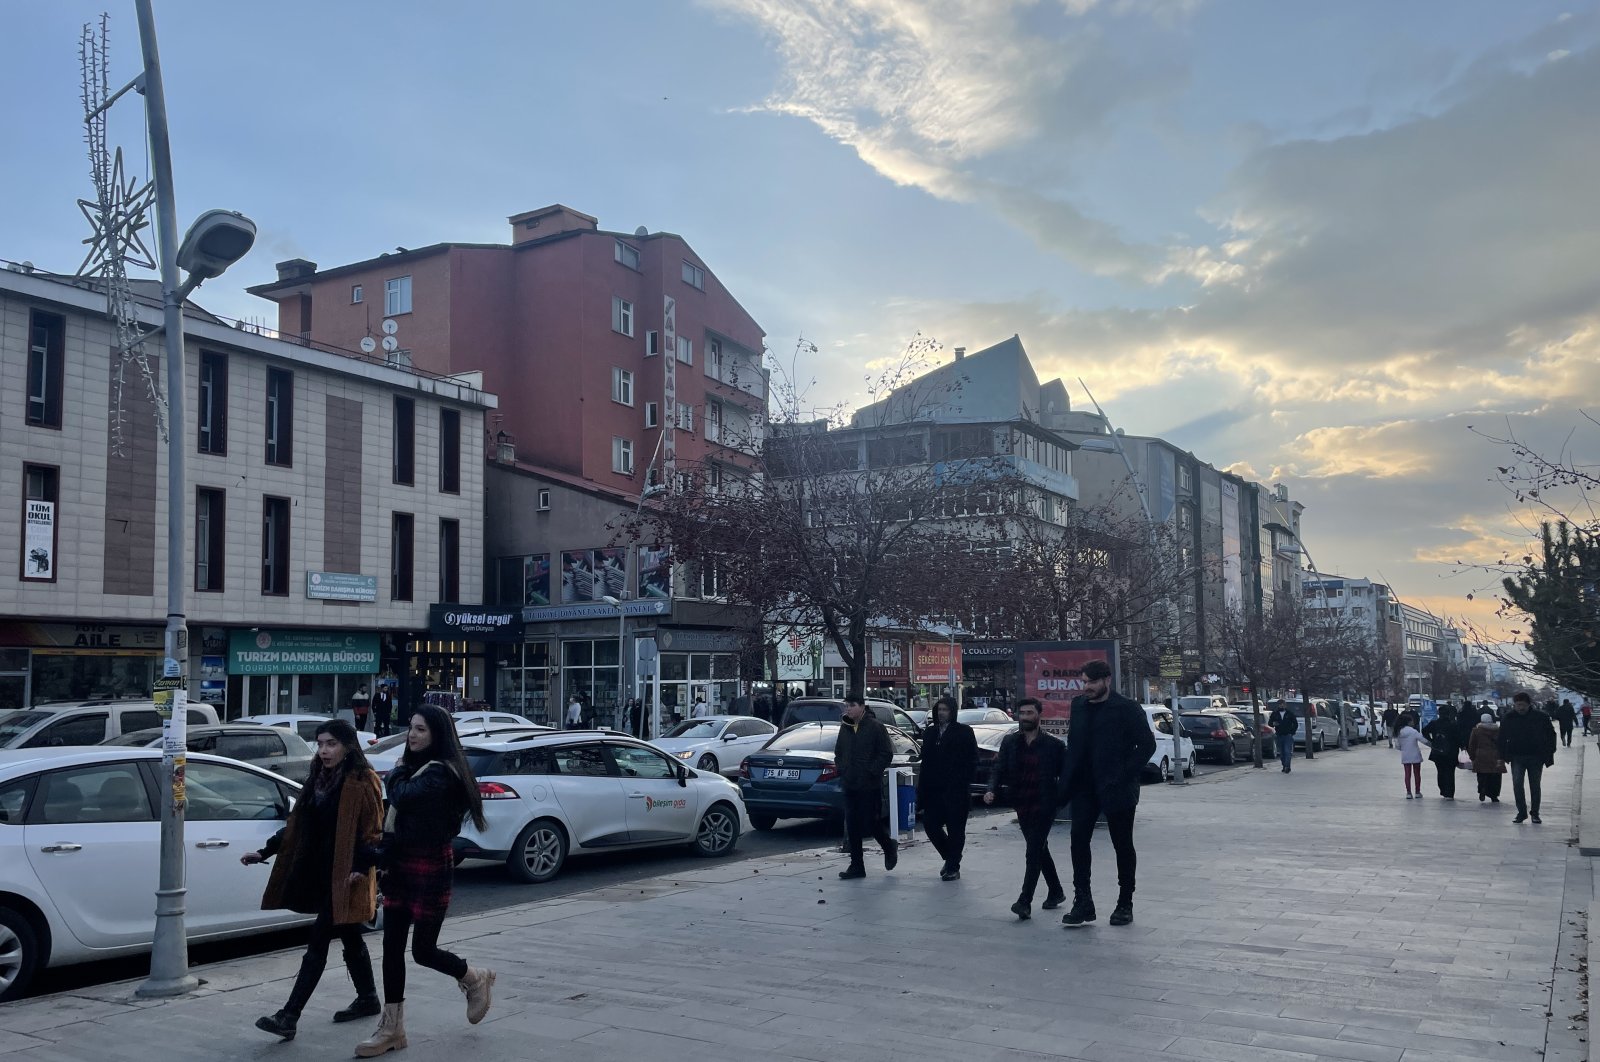 Gempa berkekuatan 5,1 guncang Erzurum Turki, tidak ada korban